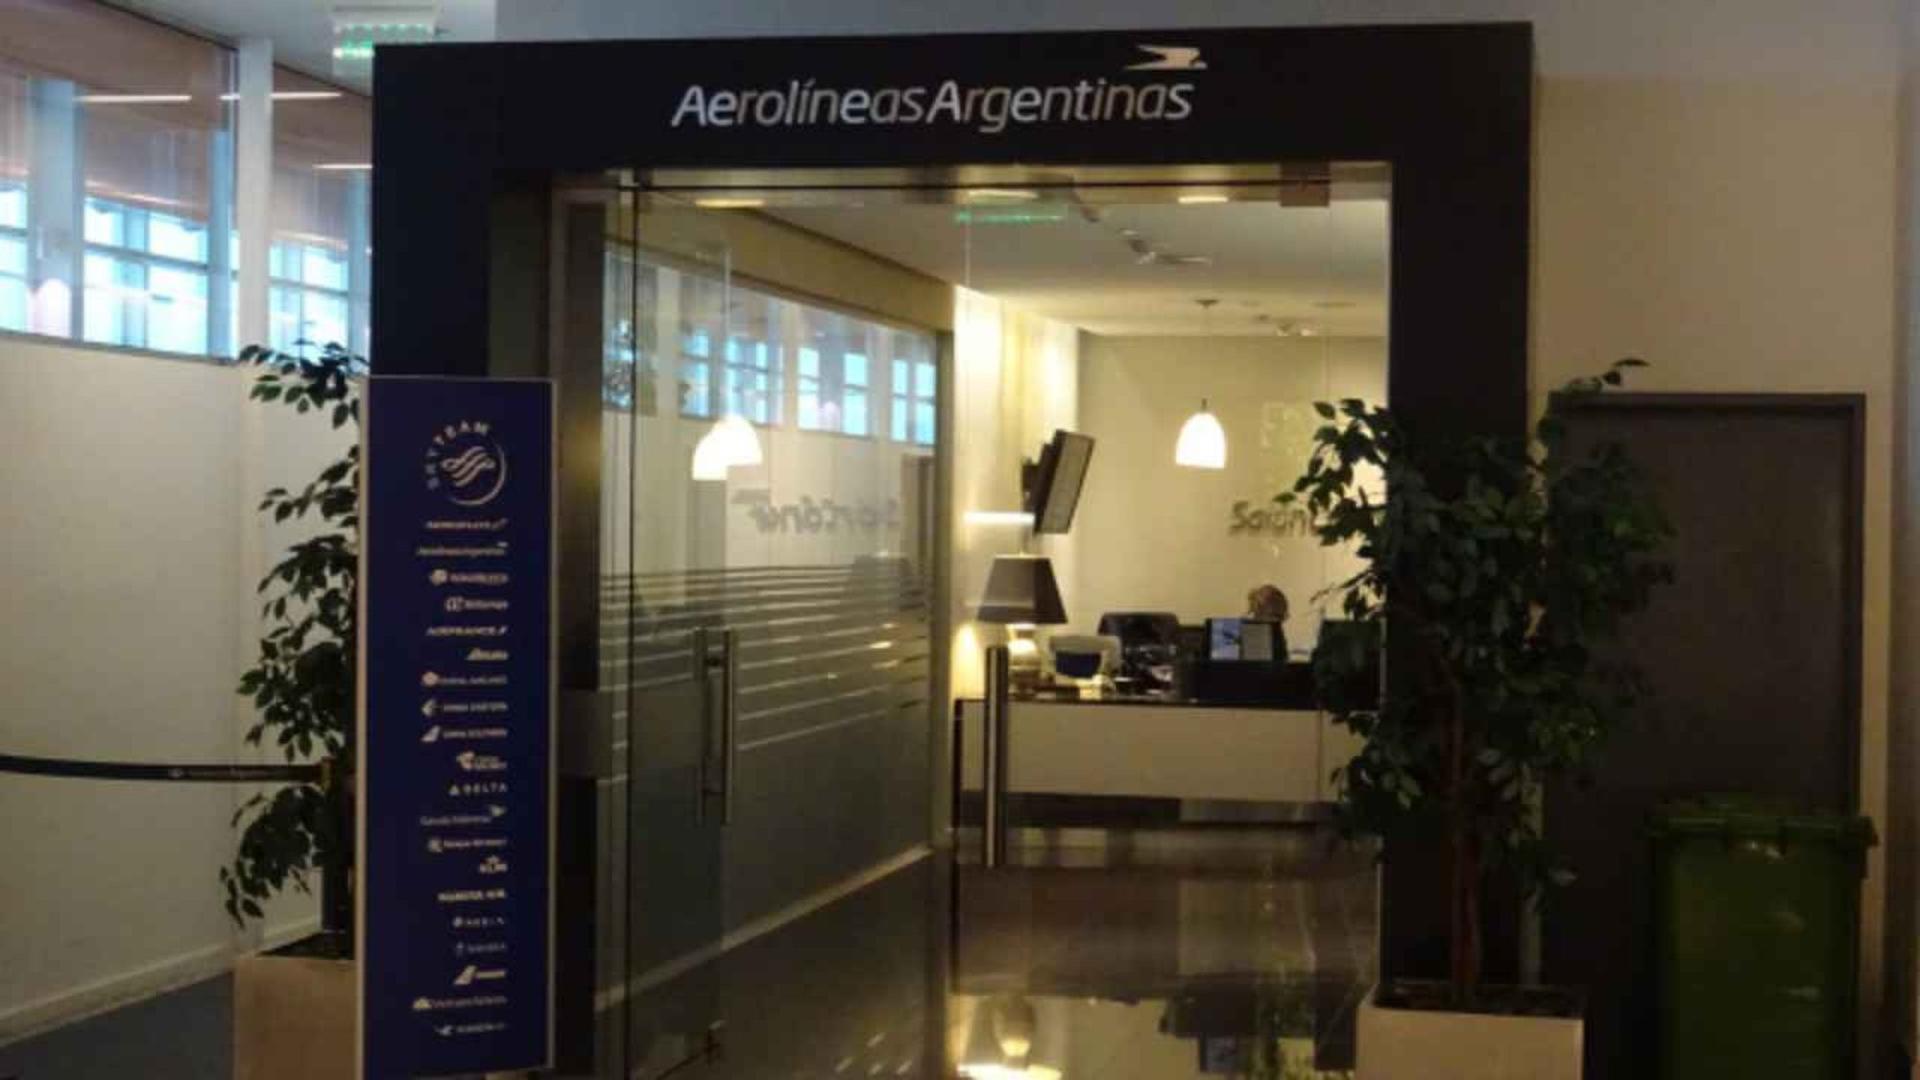 Aerolineas Argentinas Salon Condor image 16 of 22